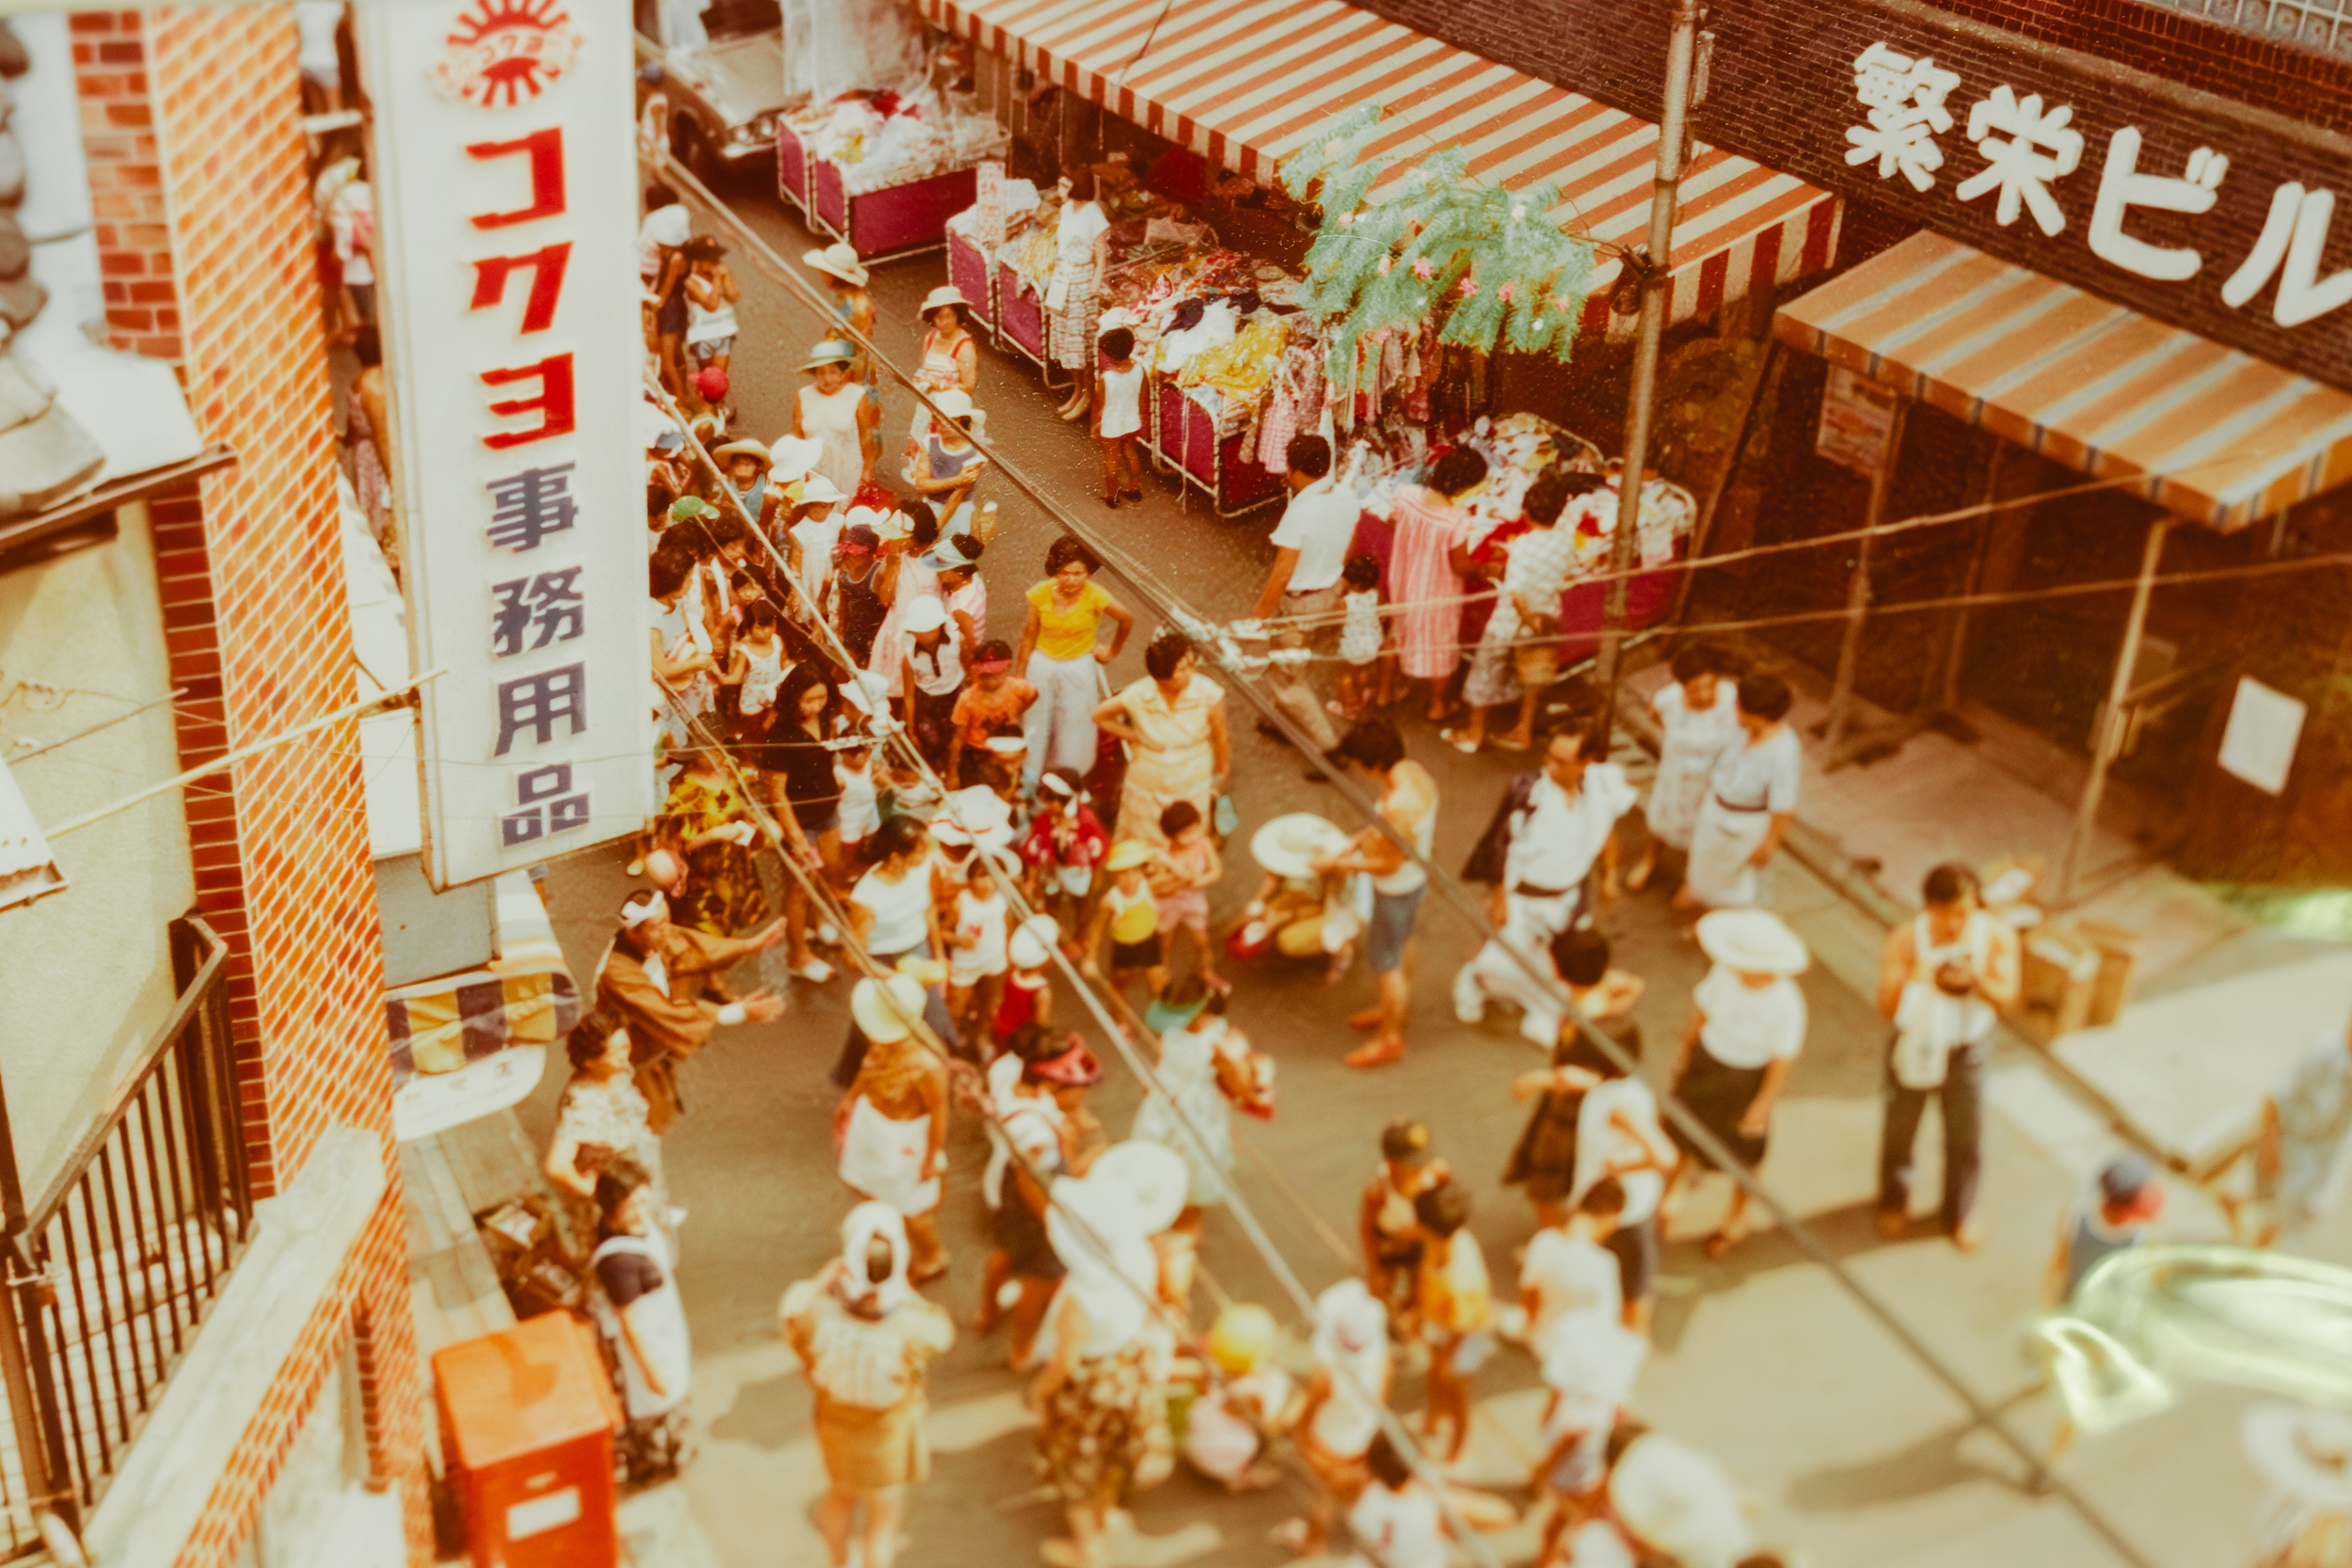 松の湯の前の通りで行われるかつてのお祭りの様子。　<a href="https://sento-to-machi.org/kita-ku/2024/03/31/matsunoyu/">▶︎松の湯とまちについて</a>